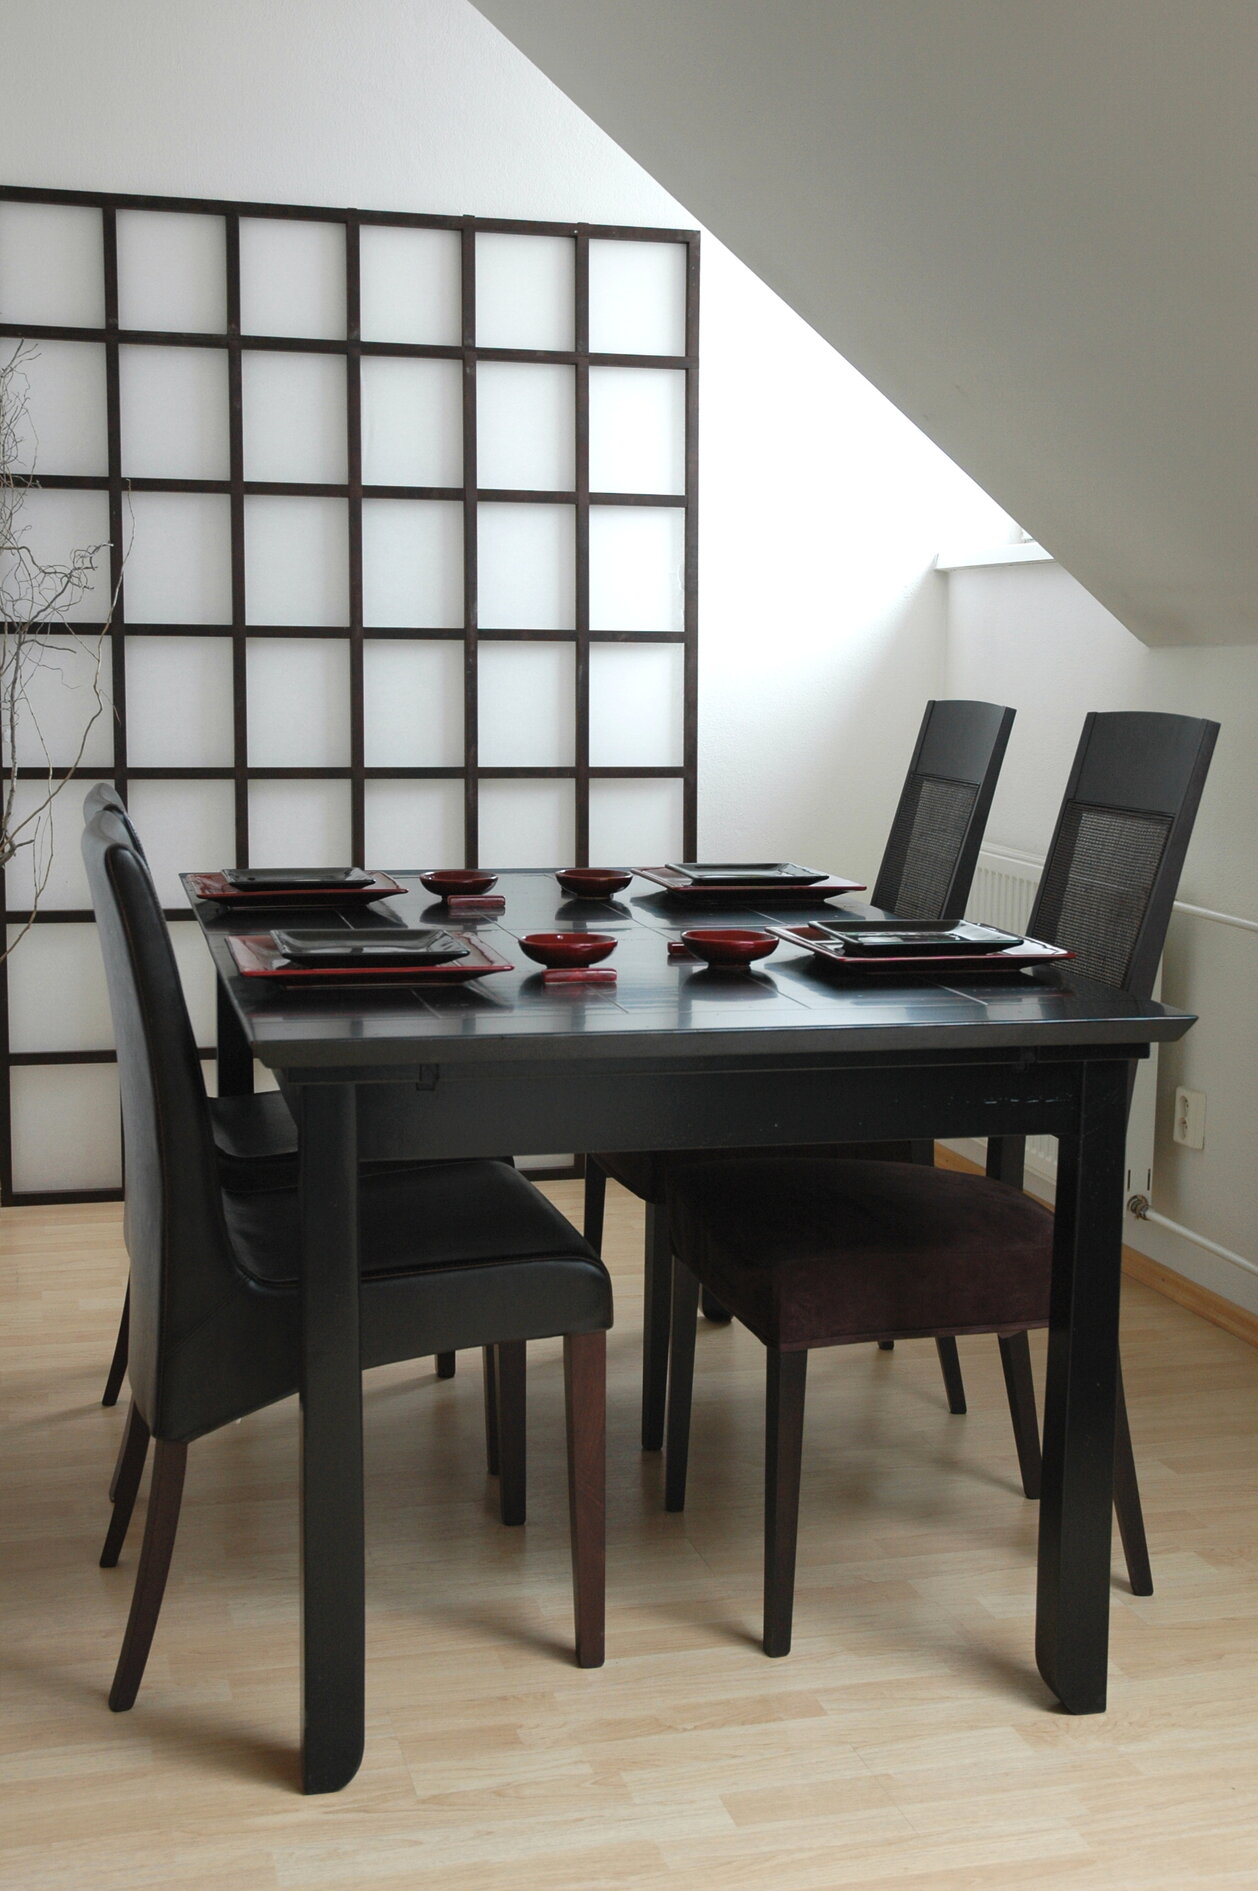 Čierny kuchynský stôl obĺdžnikového tvaru z masívneho dreva so štyrmi stoličkami so sivým čalúnením s červeným stolovaním na stole, nachádzajúce sa v kuchyni